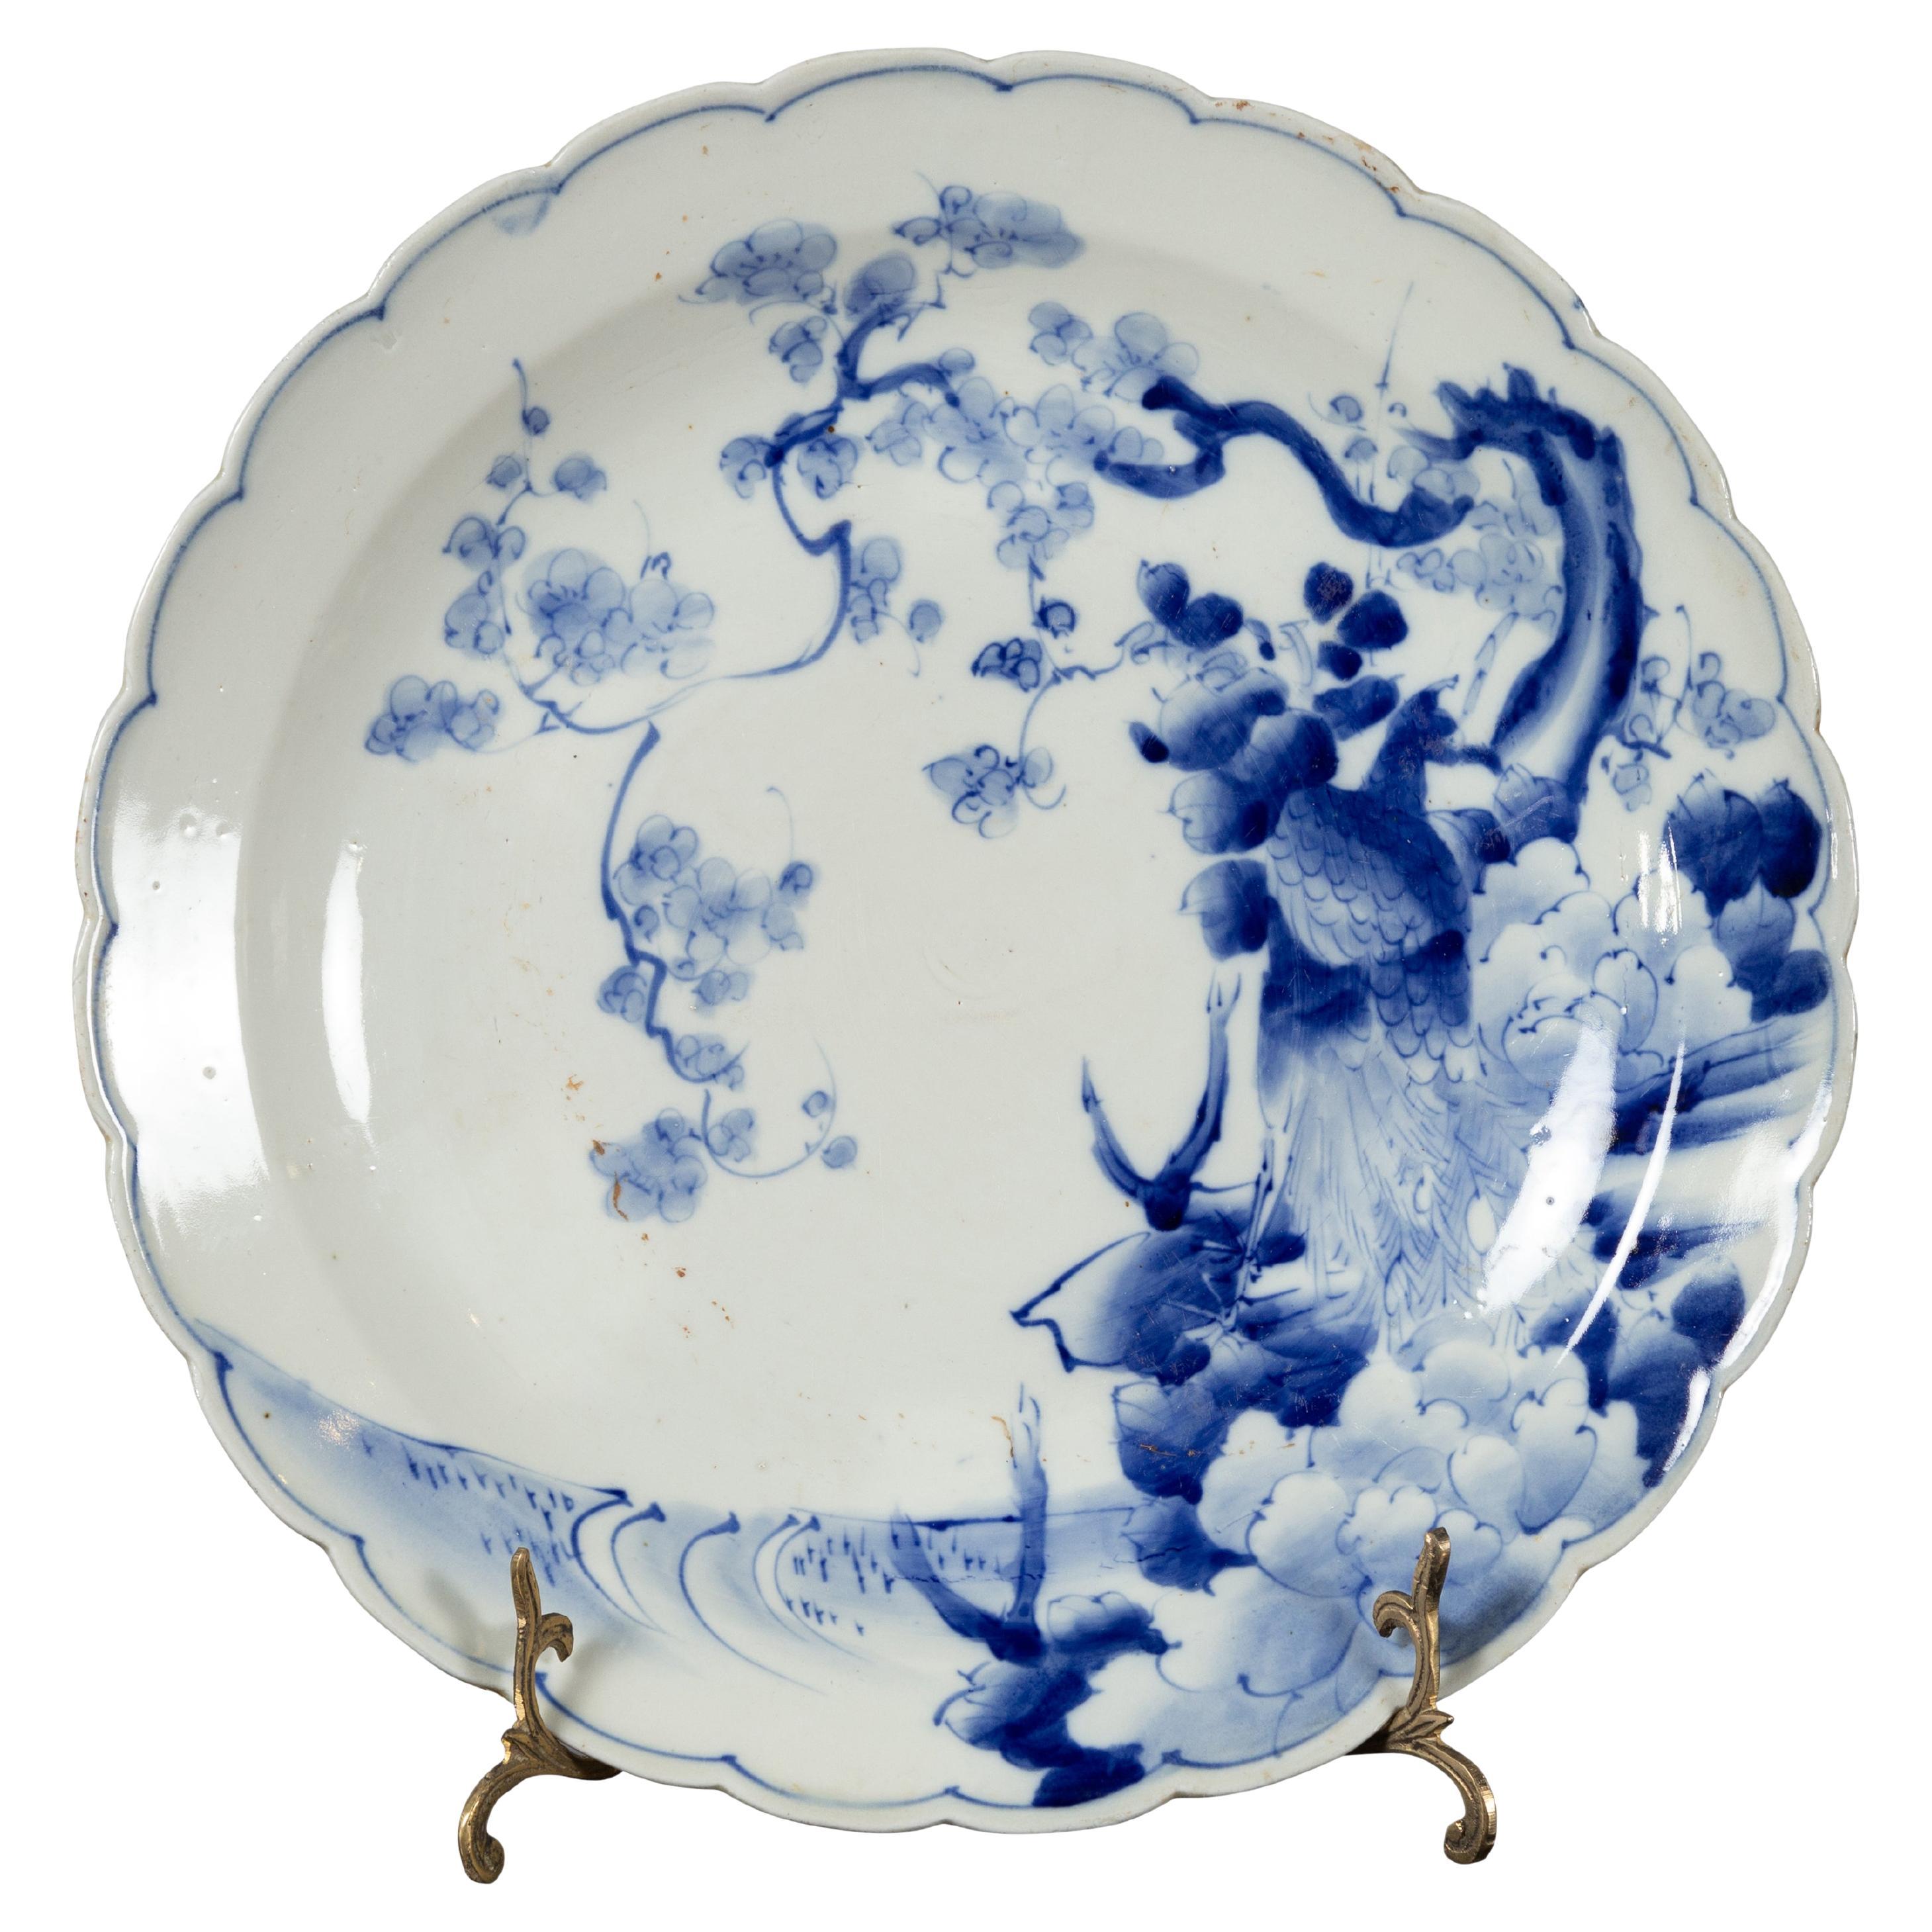 Japanischer Porzellanteller des 19. Jahrhunderts mit handbemaltem blauem und weißem Dekor